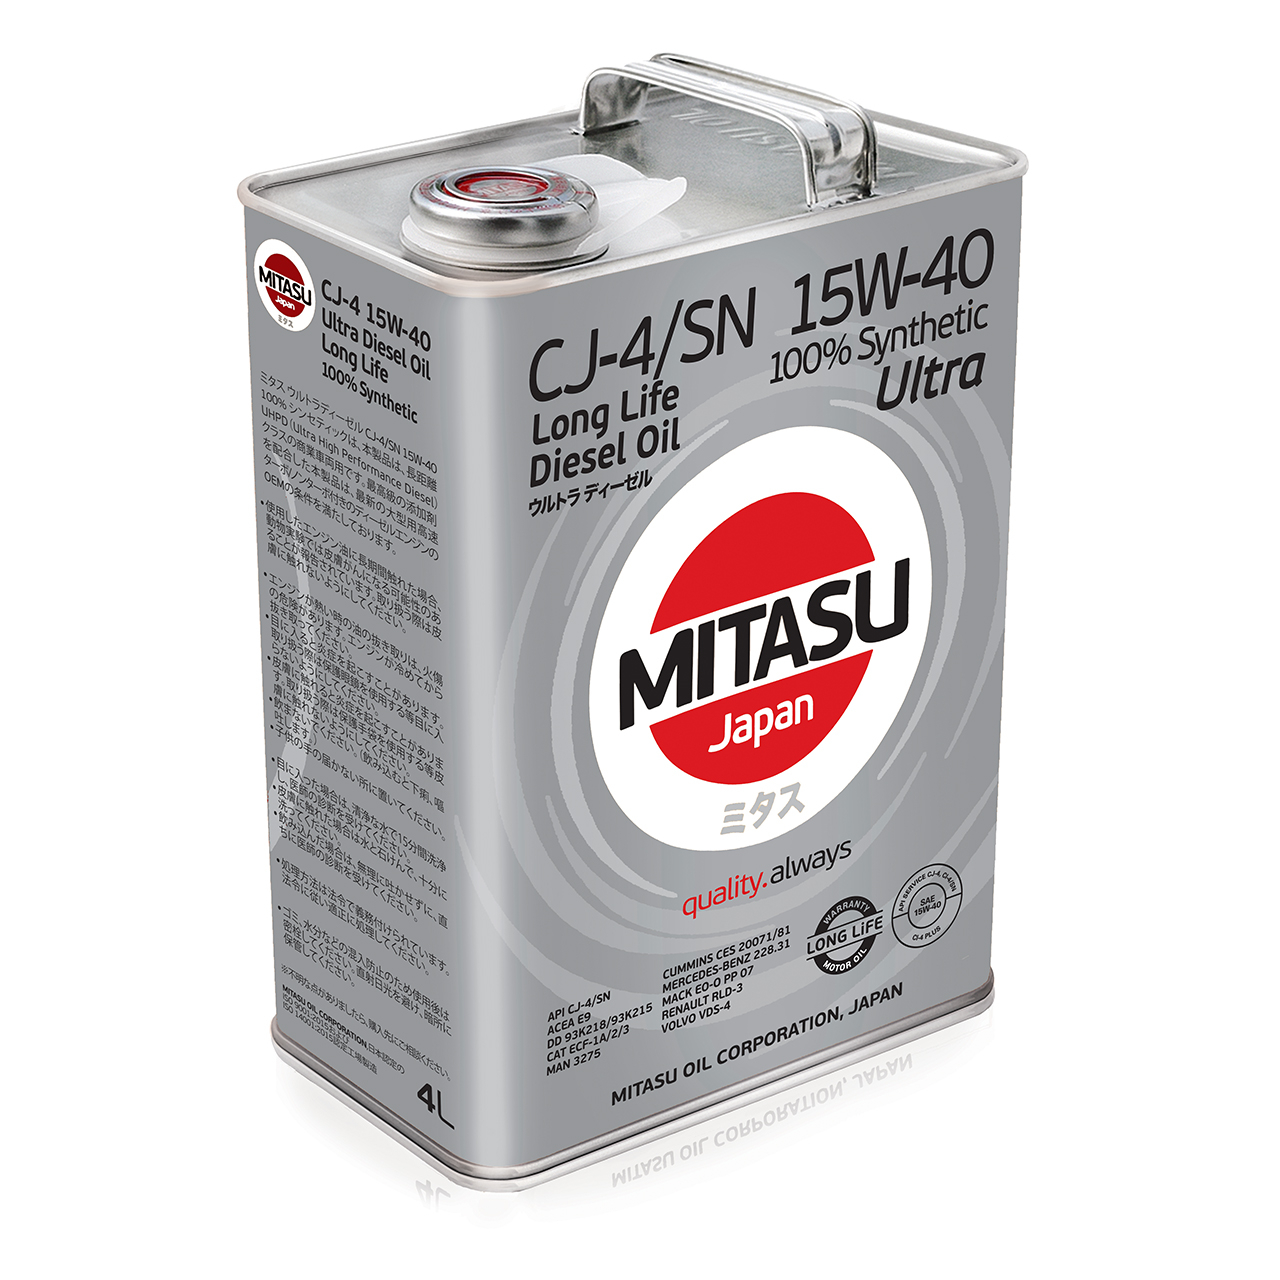 Купить запчасть MITASU - MJ2144 Масло моторное MITASU CJ-4/SN 15w40 4л синтетическое для дизельных двигателей MJ214 (1/6) Япония